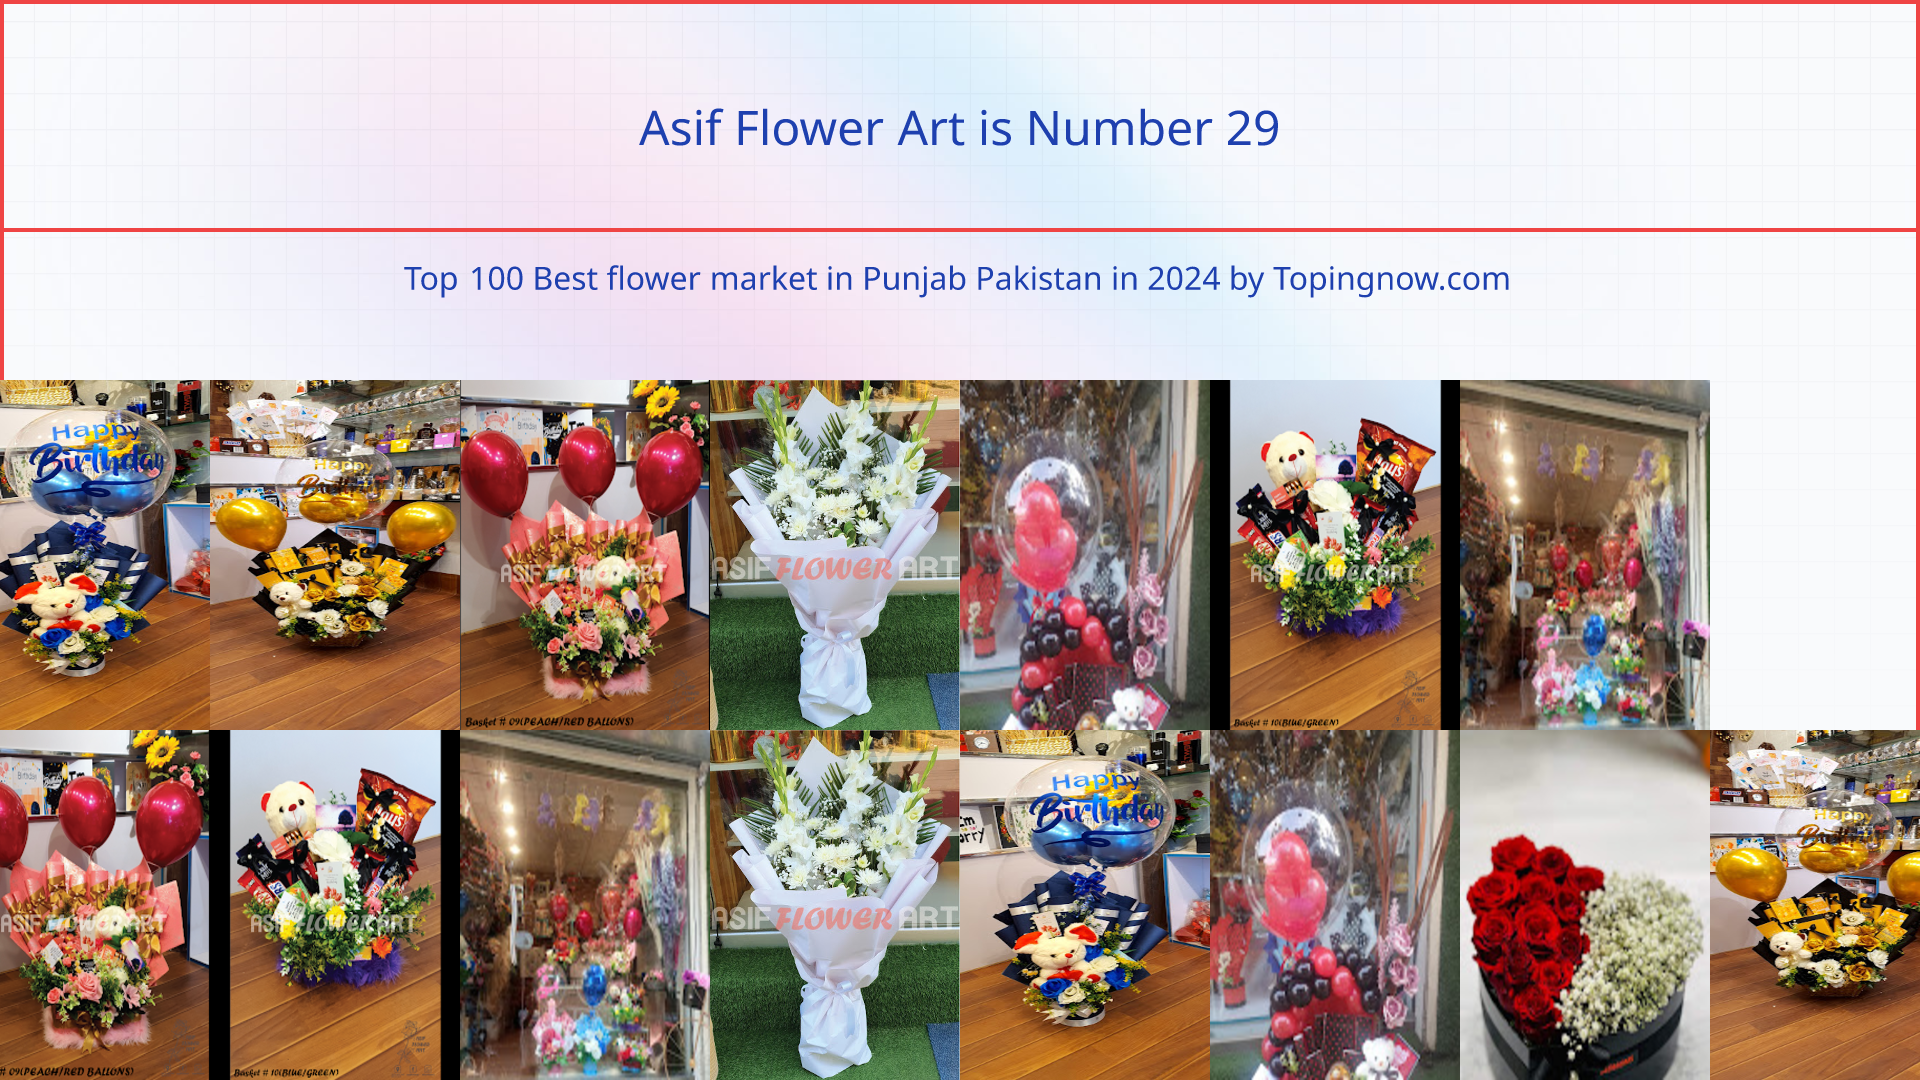 Asif Flower Art: Top 100 Best flower market in Punjab Pakistan in 2024